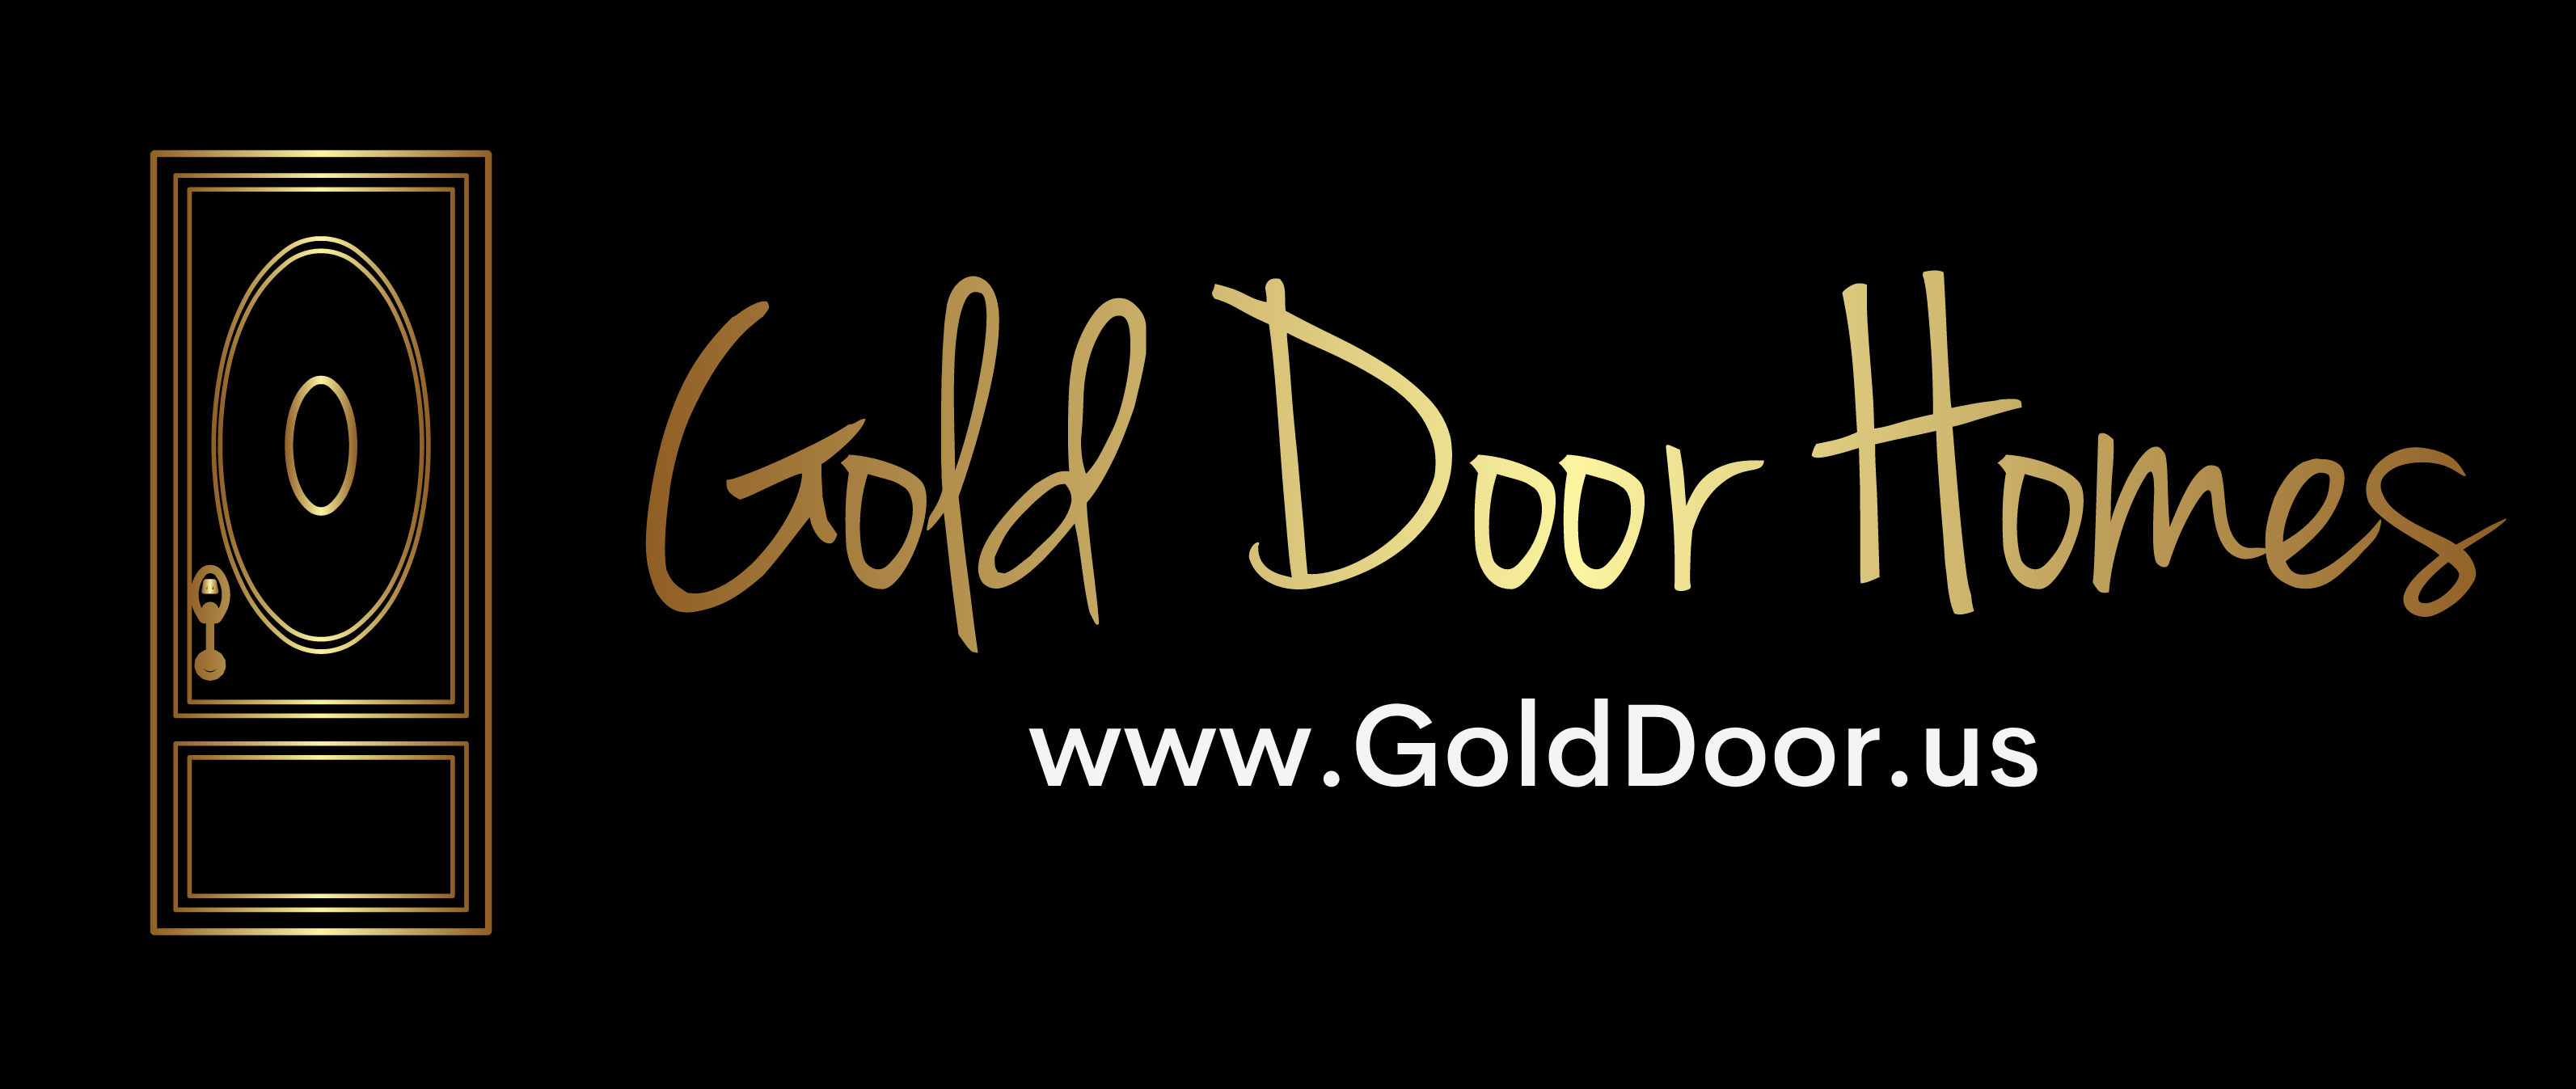 Gold Door Homes Photo